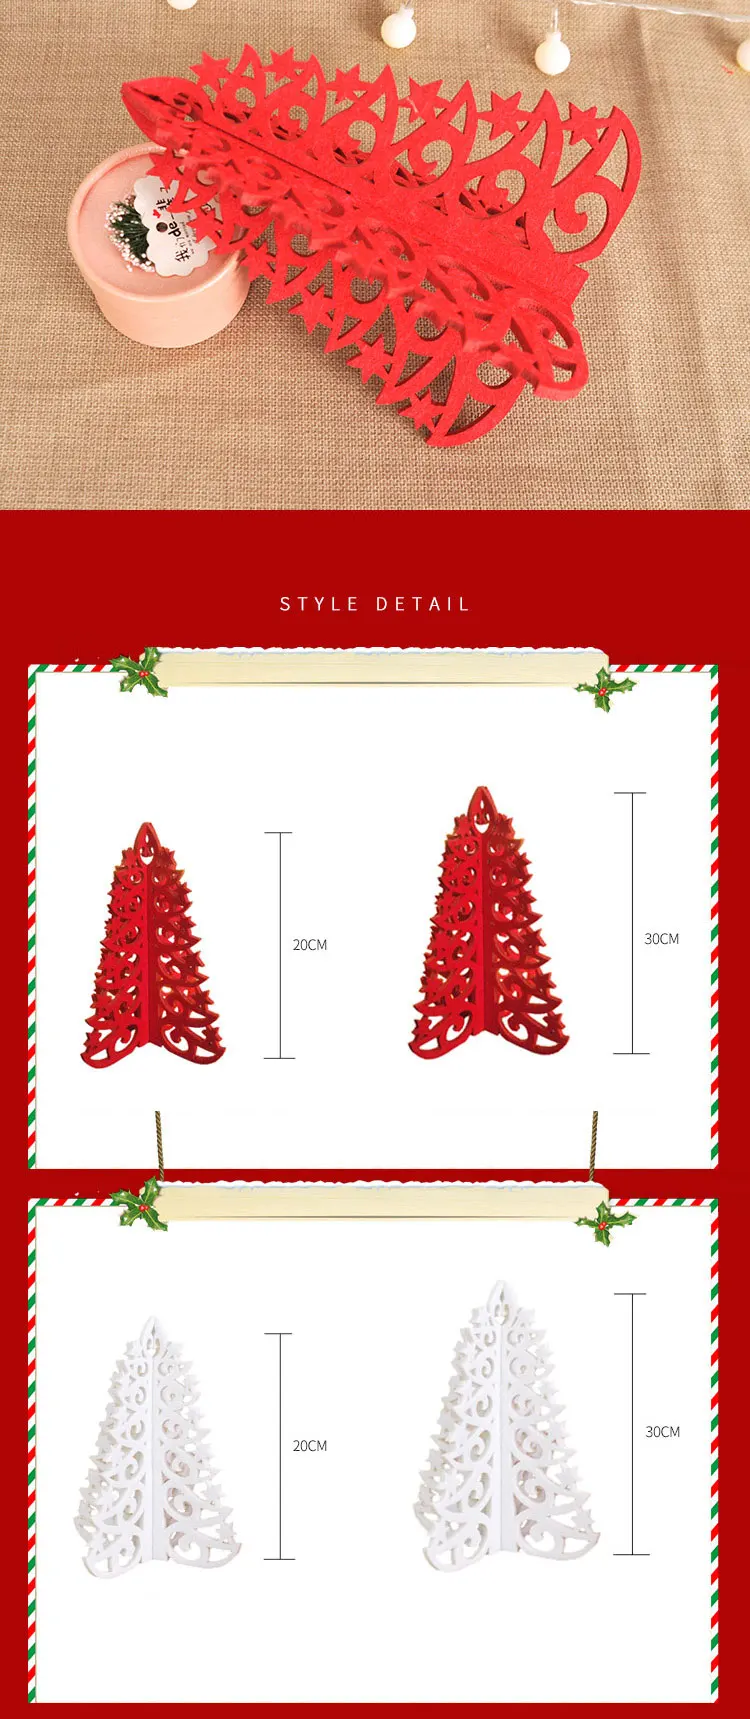 20-30 см полые звезды войлочная ткань DIY Рождество домашнее украшение в виде дерева Navidad аксессуары фестиваль подарки для детей